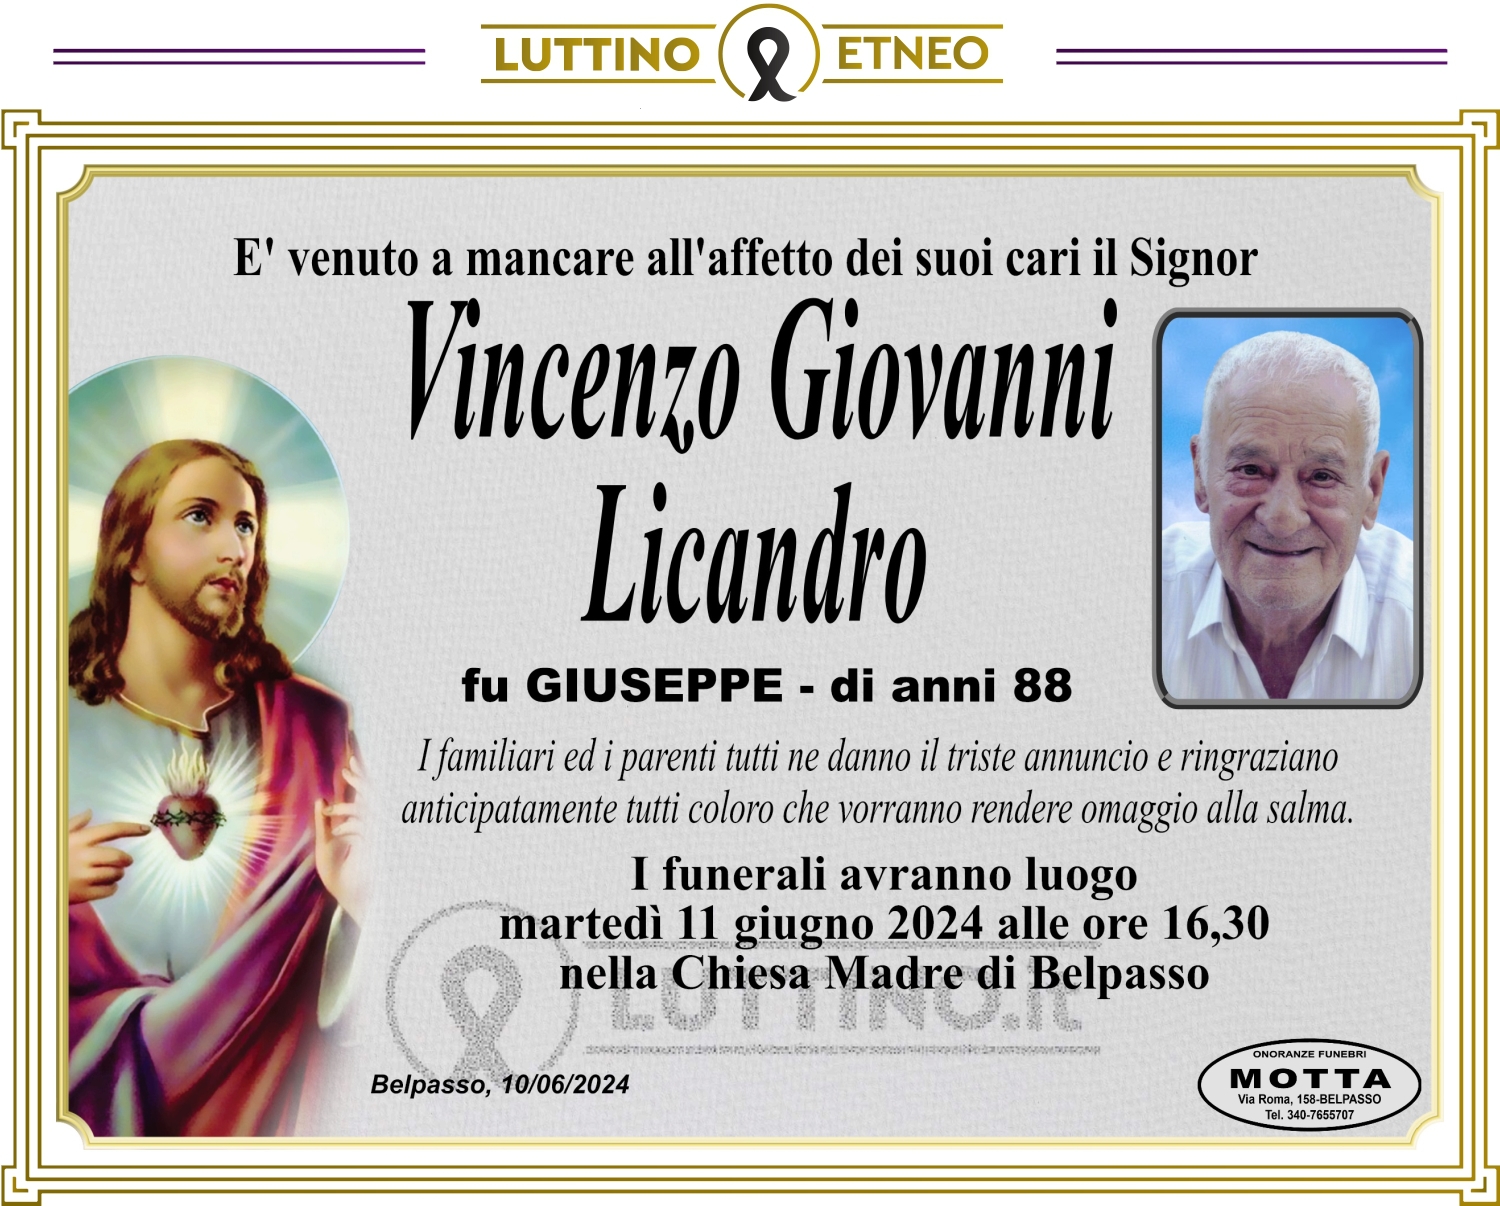 Vincenzo Giovanni Licandro